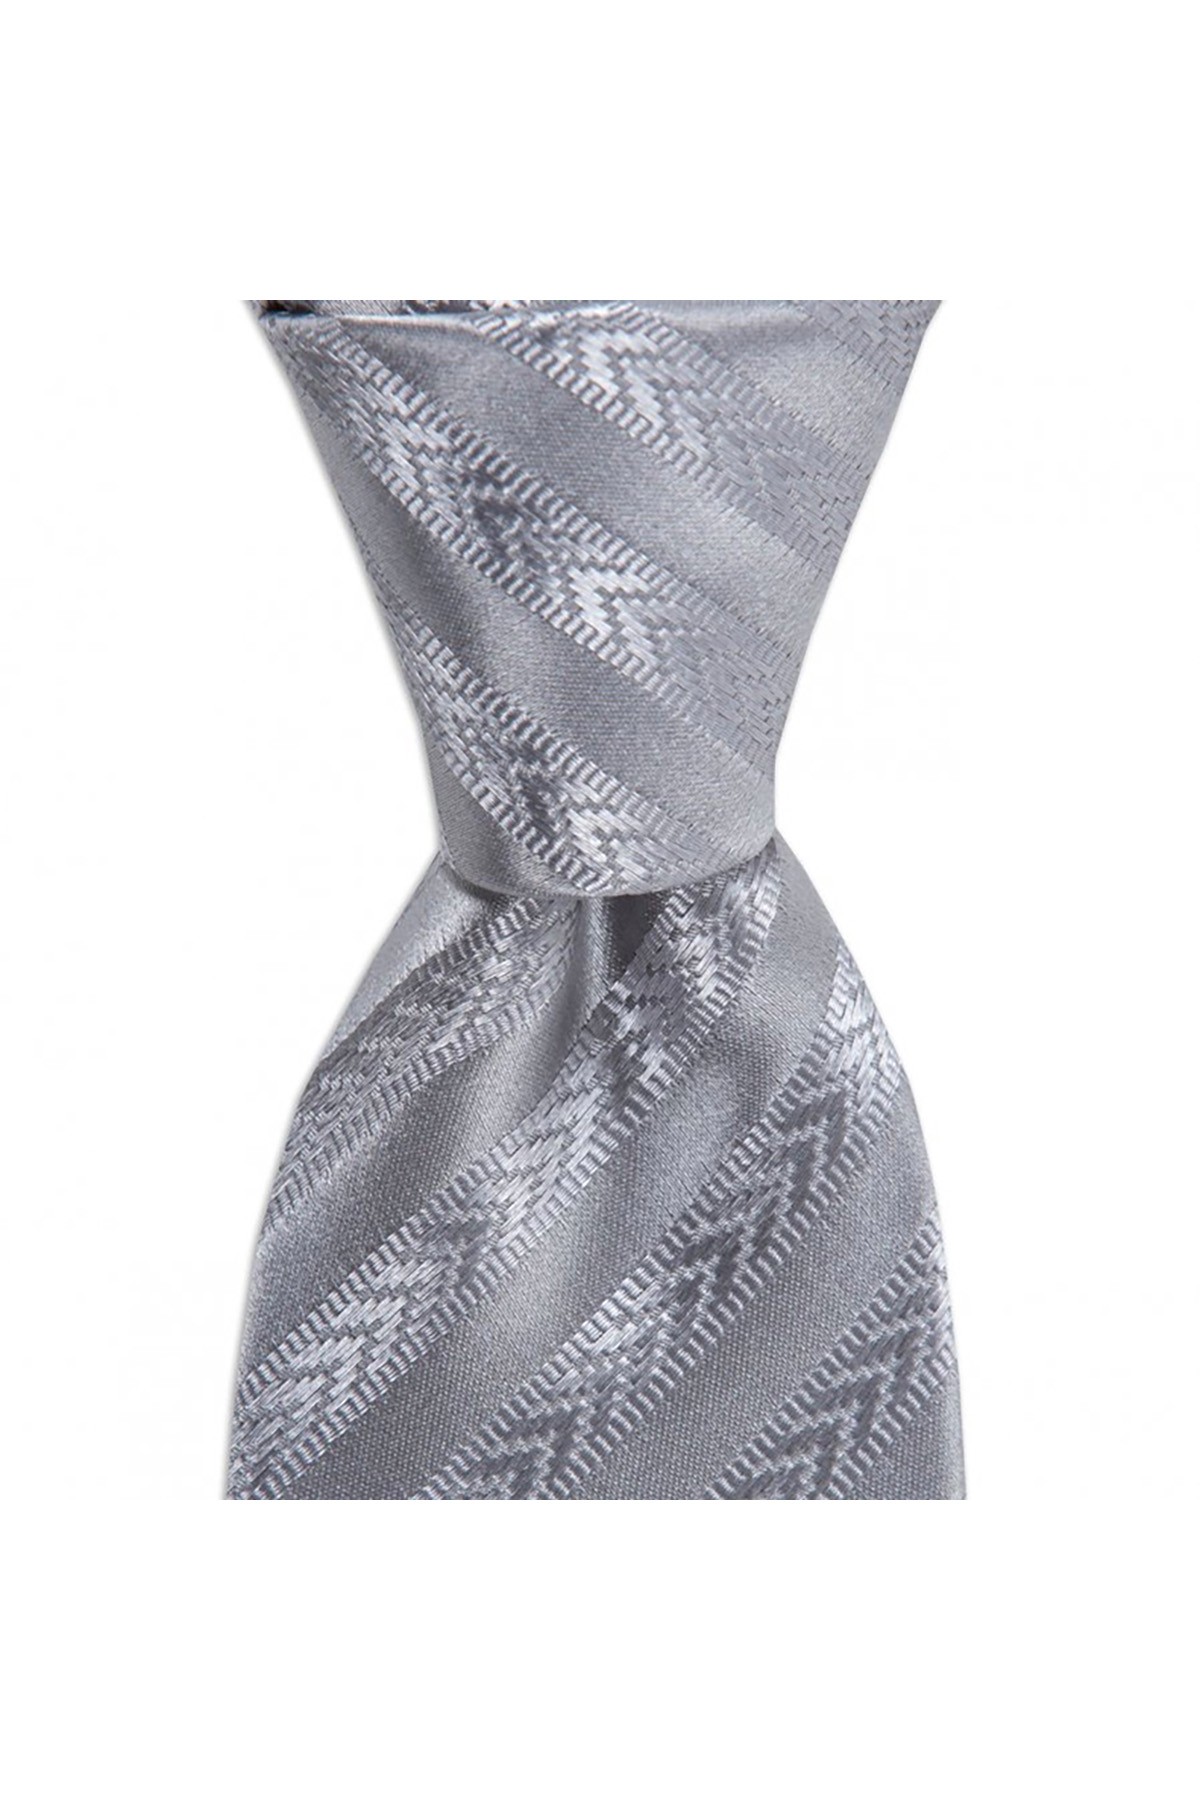 Klasik çizgili 8 cm genişliğinde düz ipek kravat